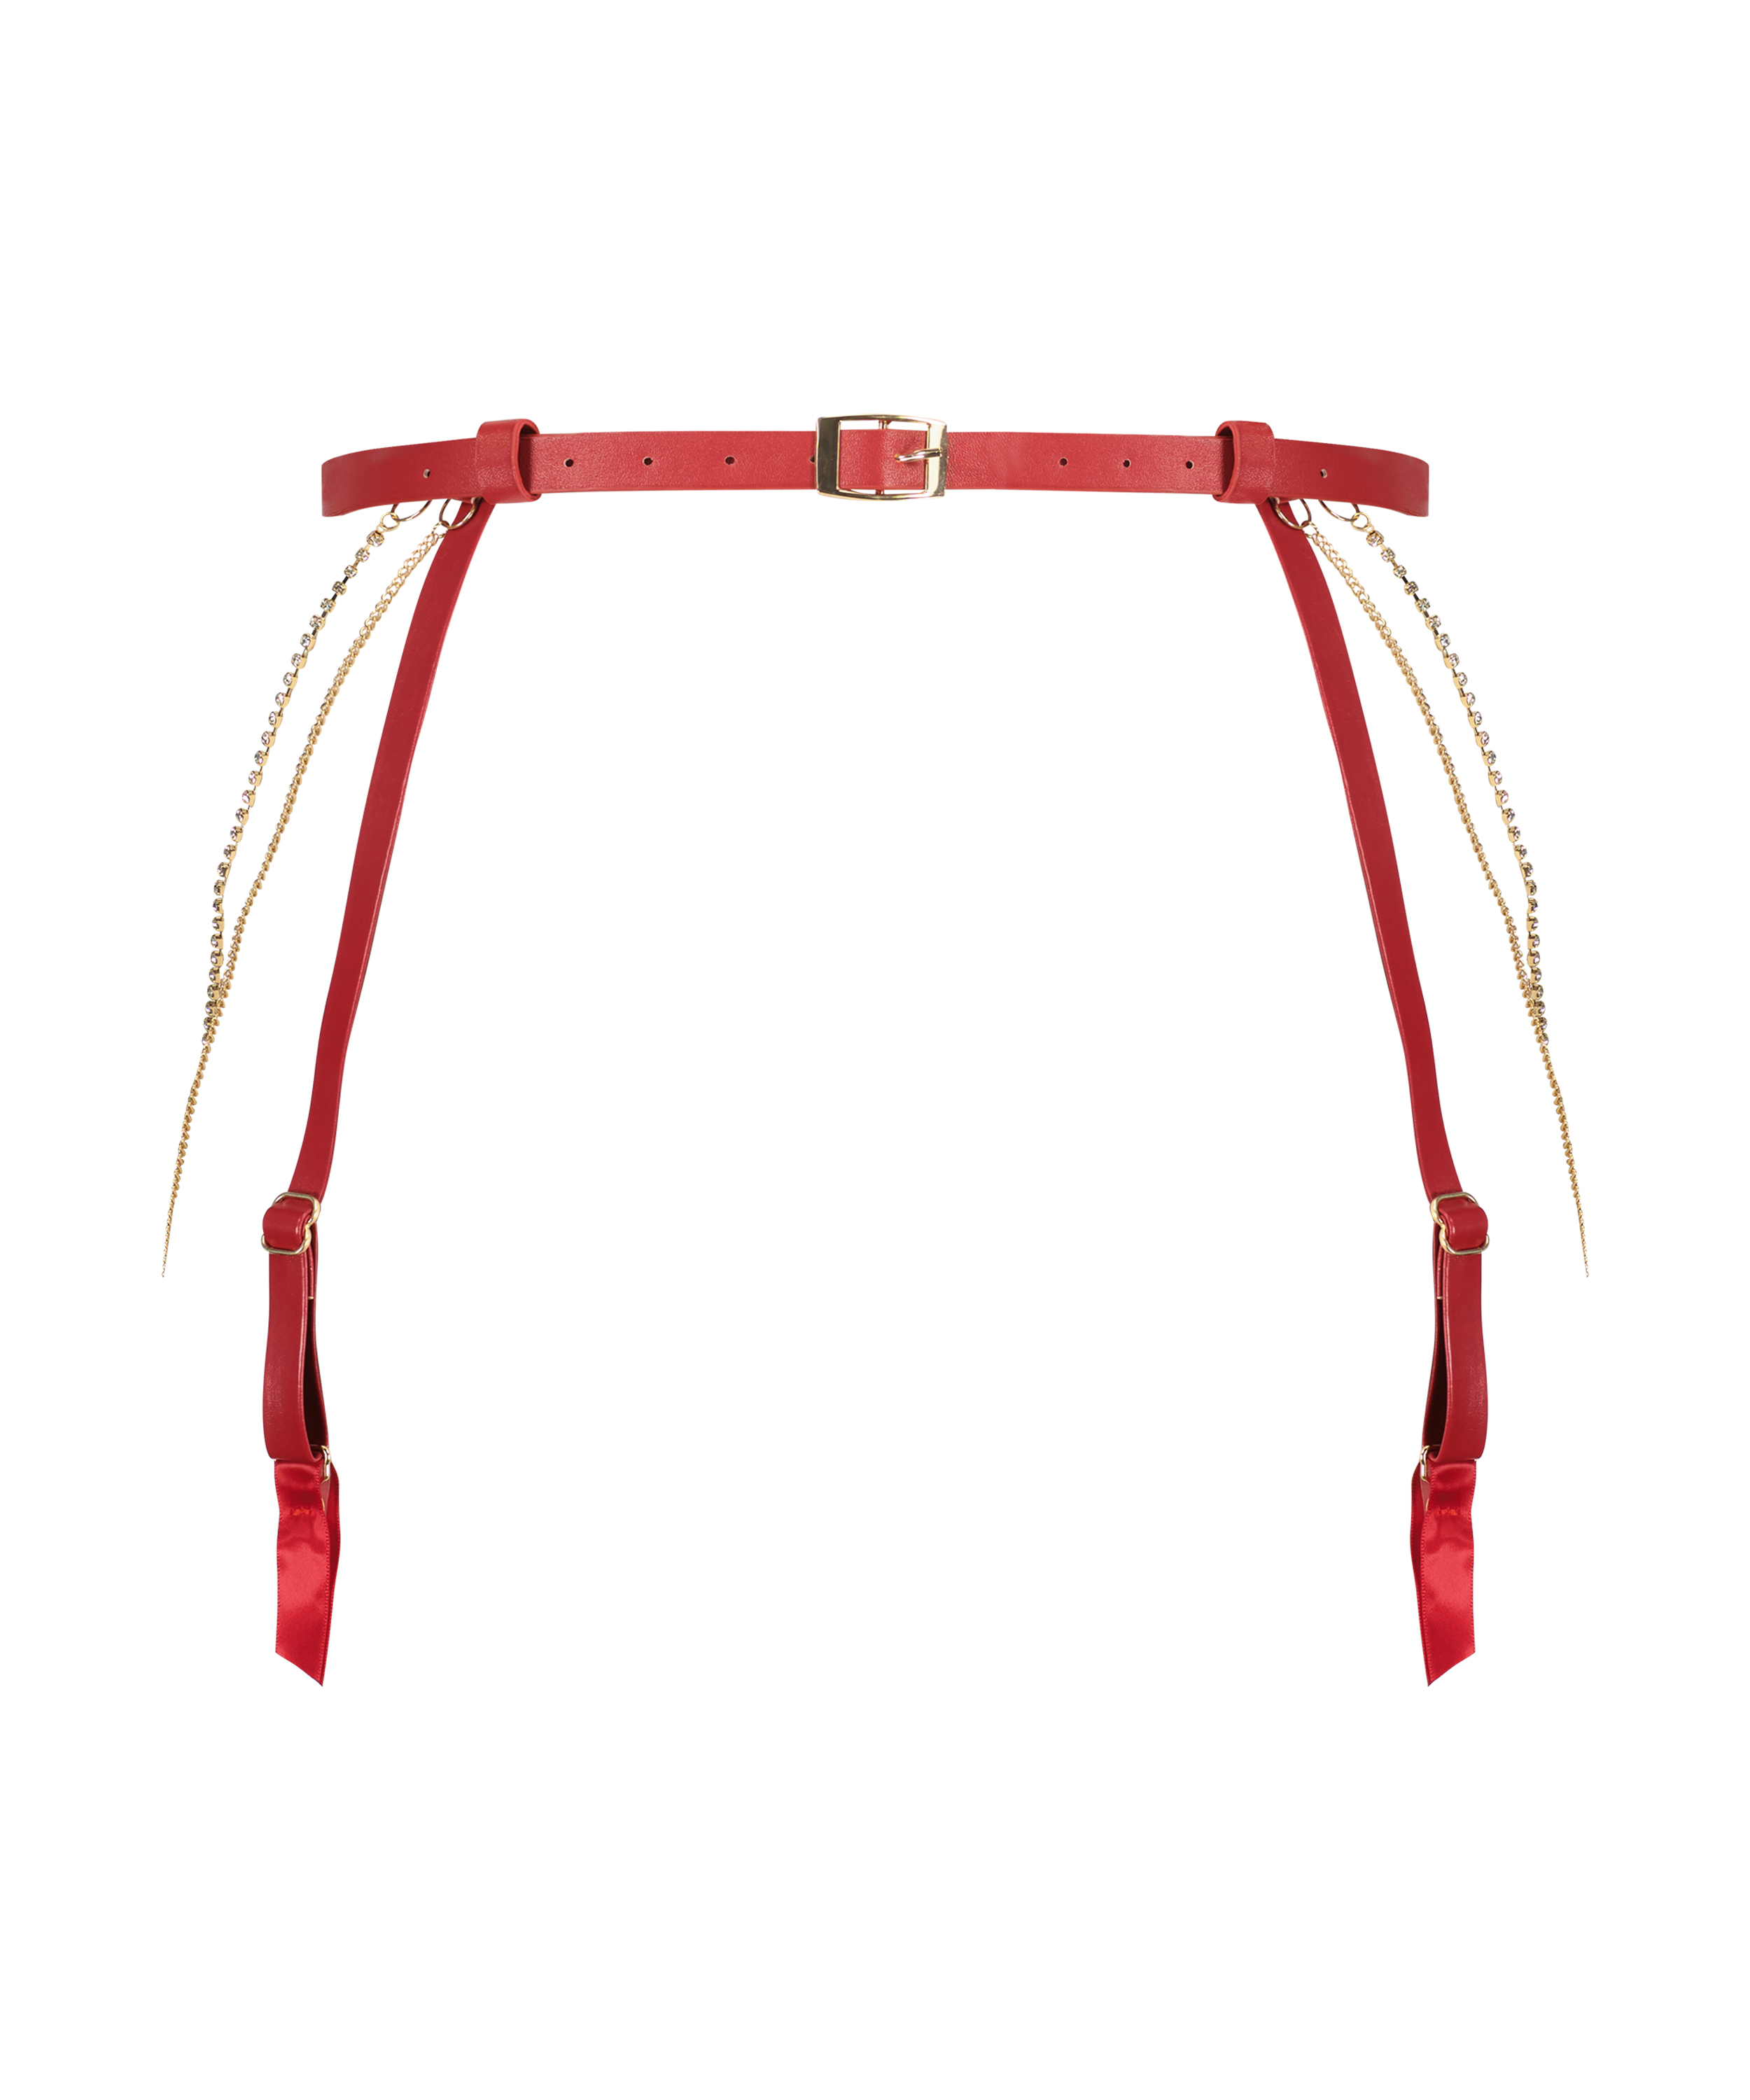 Chain Suspender Belt, Red, main